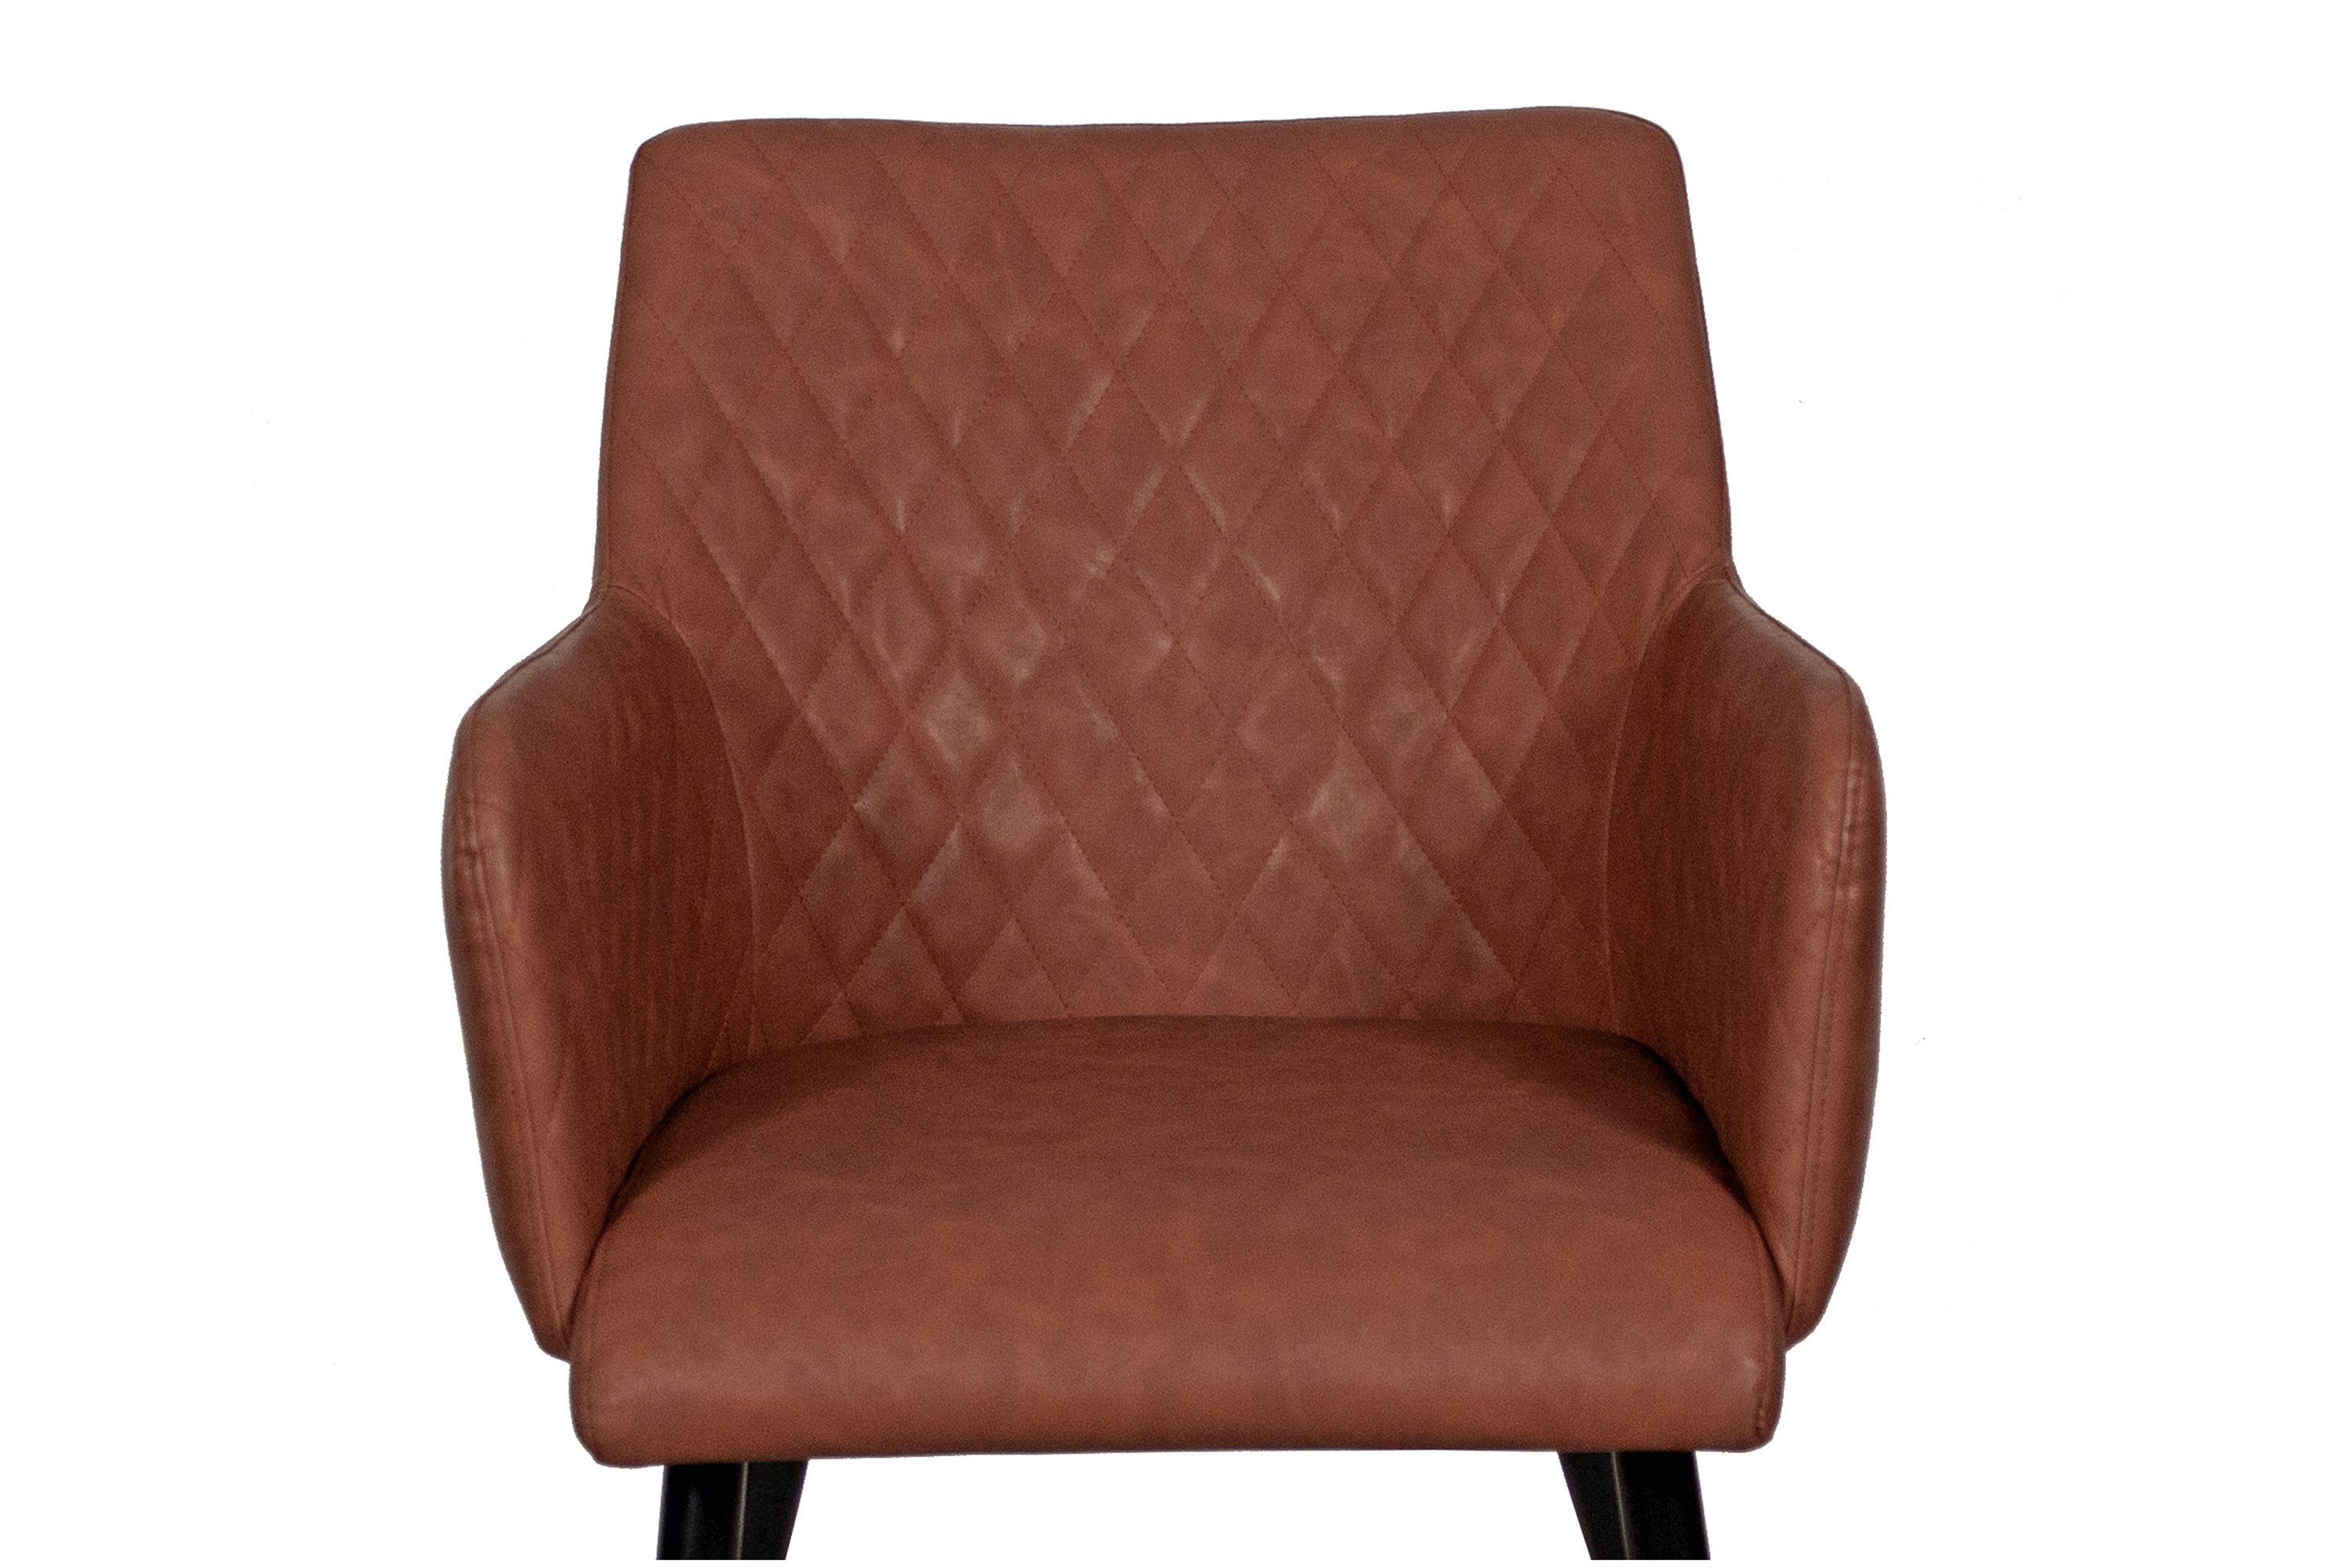 Junado® Armlehnstuhl Stuhl und Kunstlederbezug Rautenmuster cognac Rose, mit eleganter